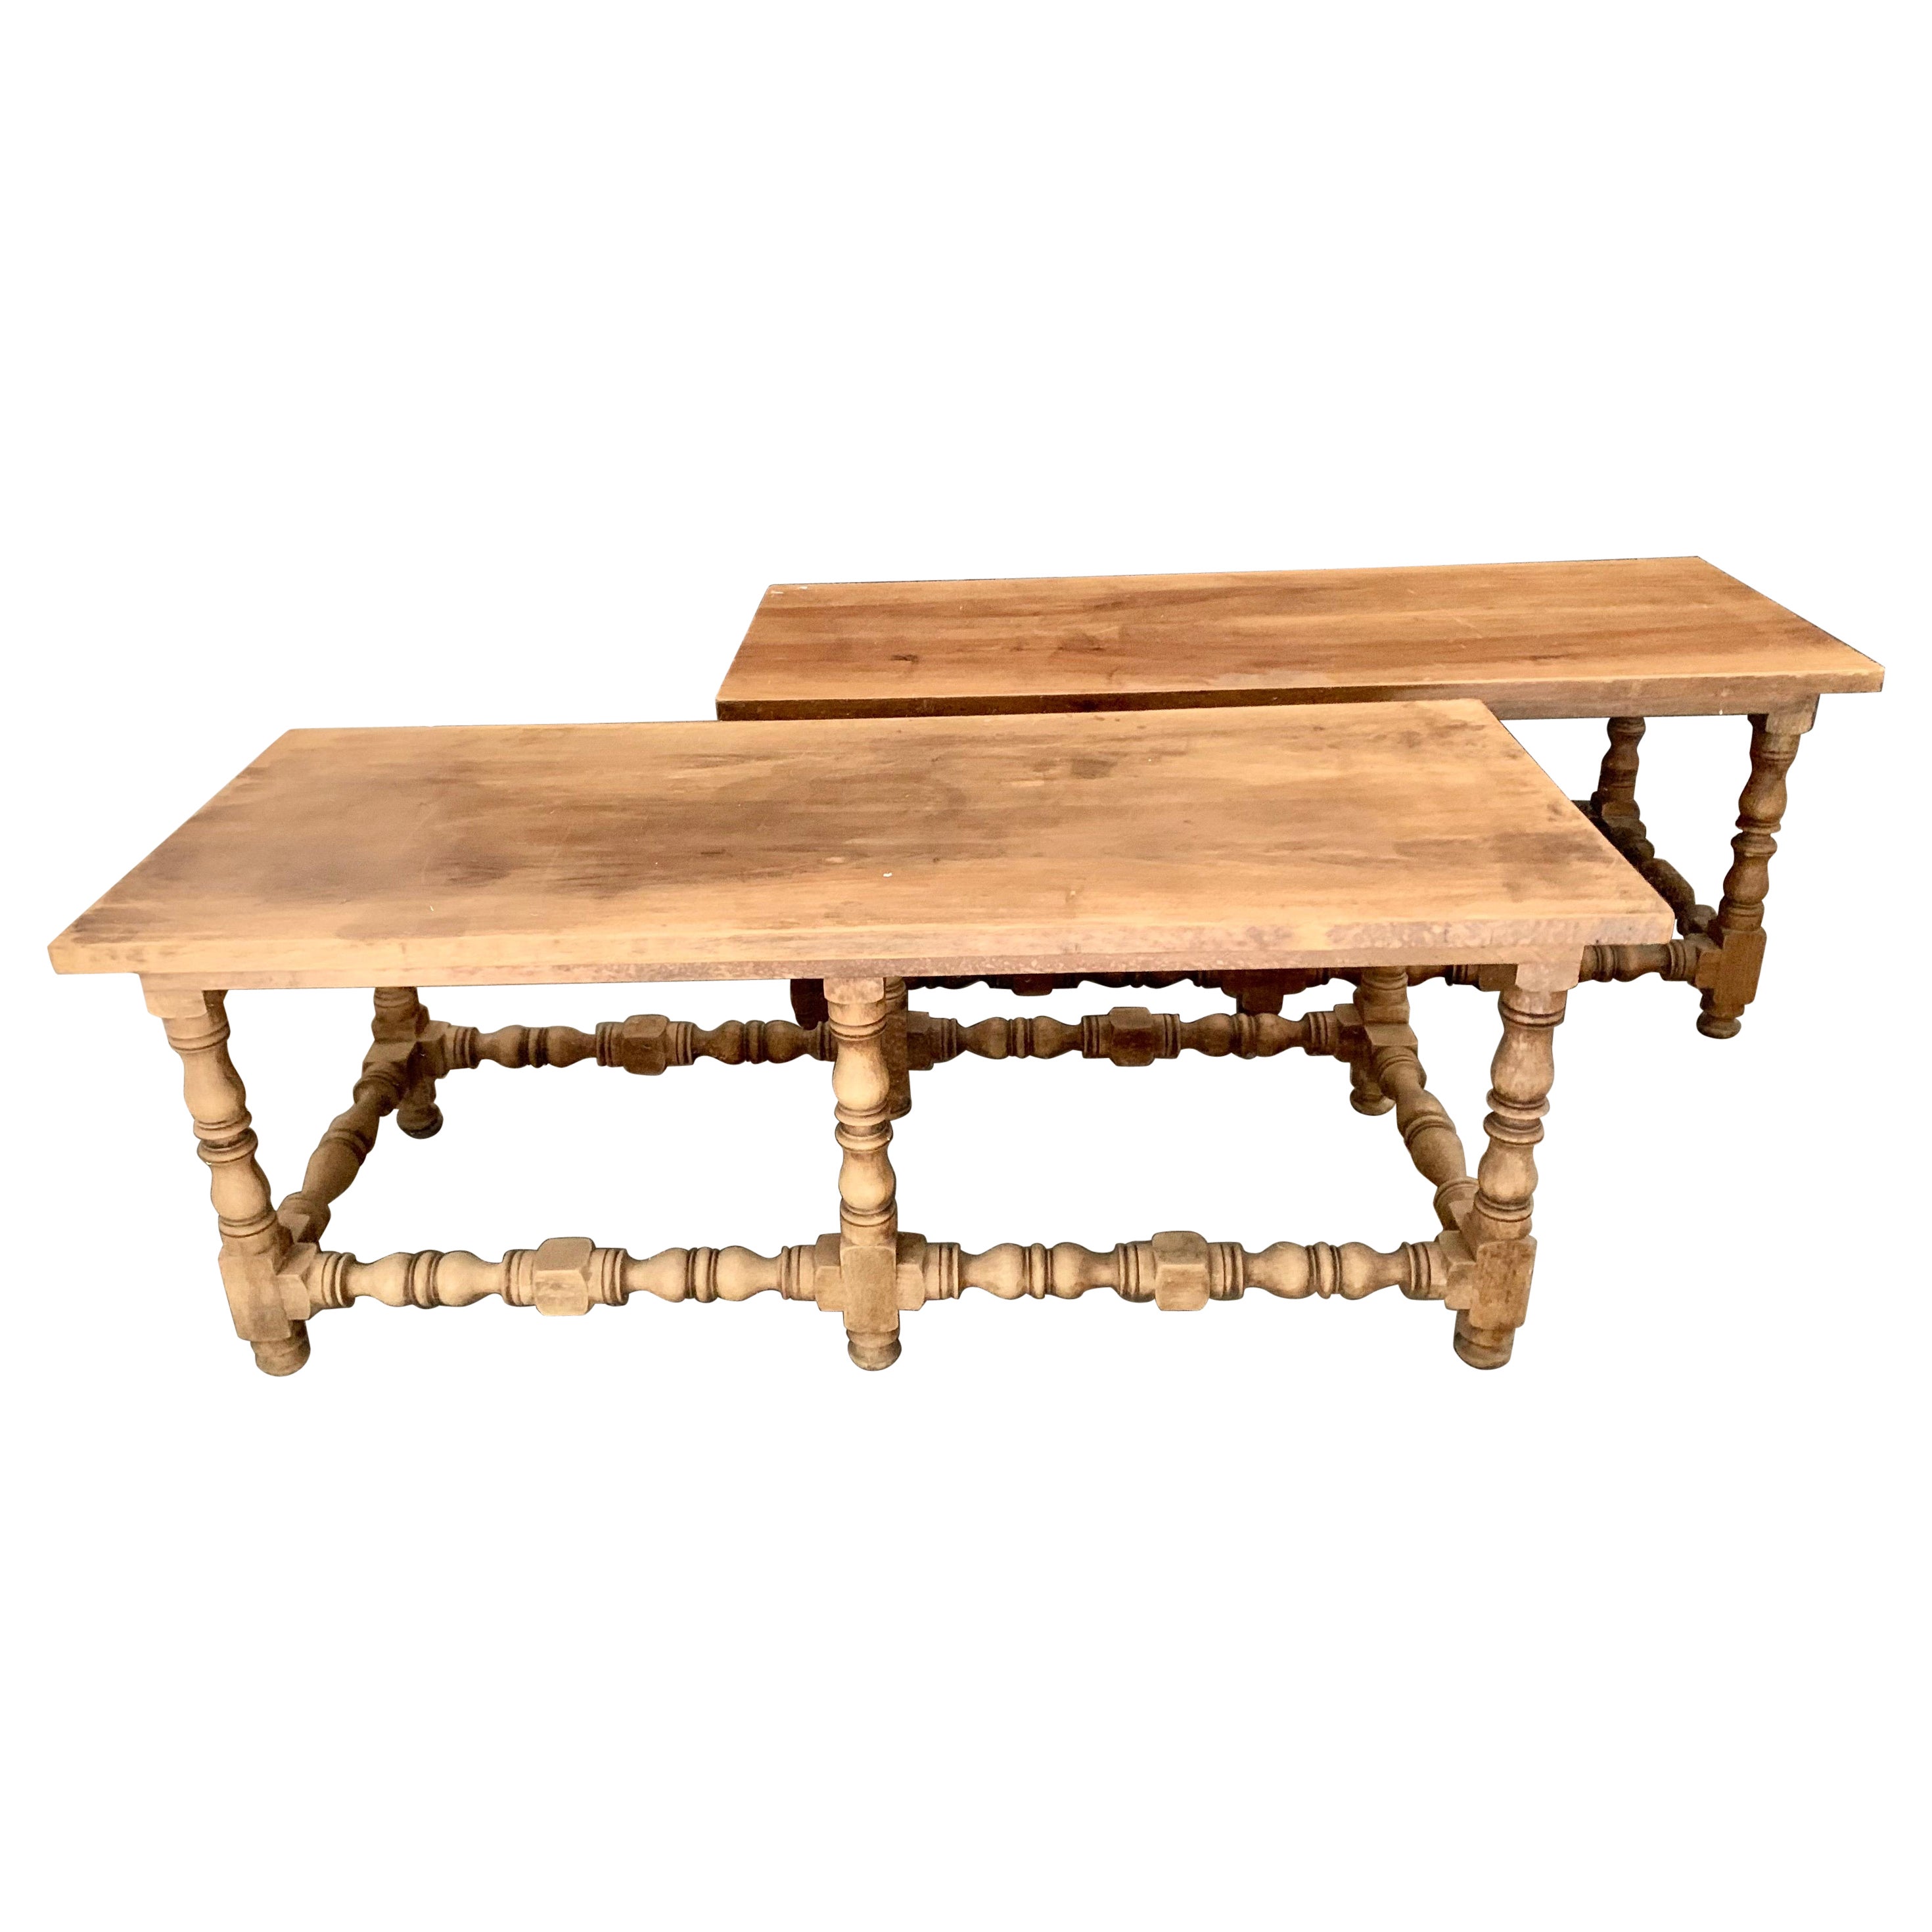 Paire de bancs ou de tables basses espagnols de style baroque en bois de hêtre